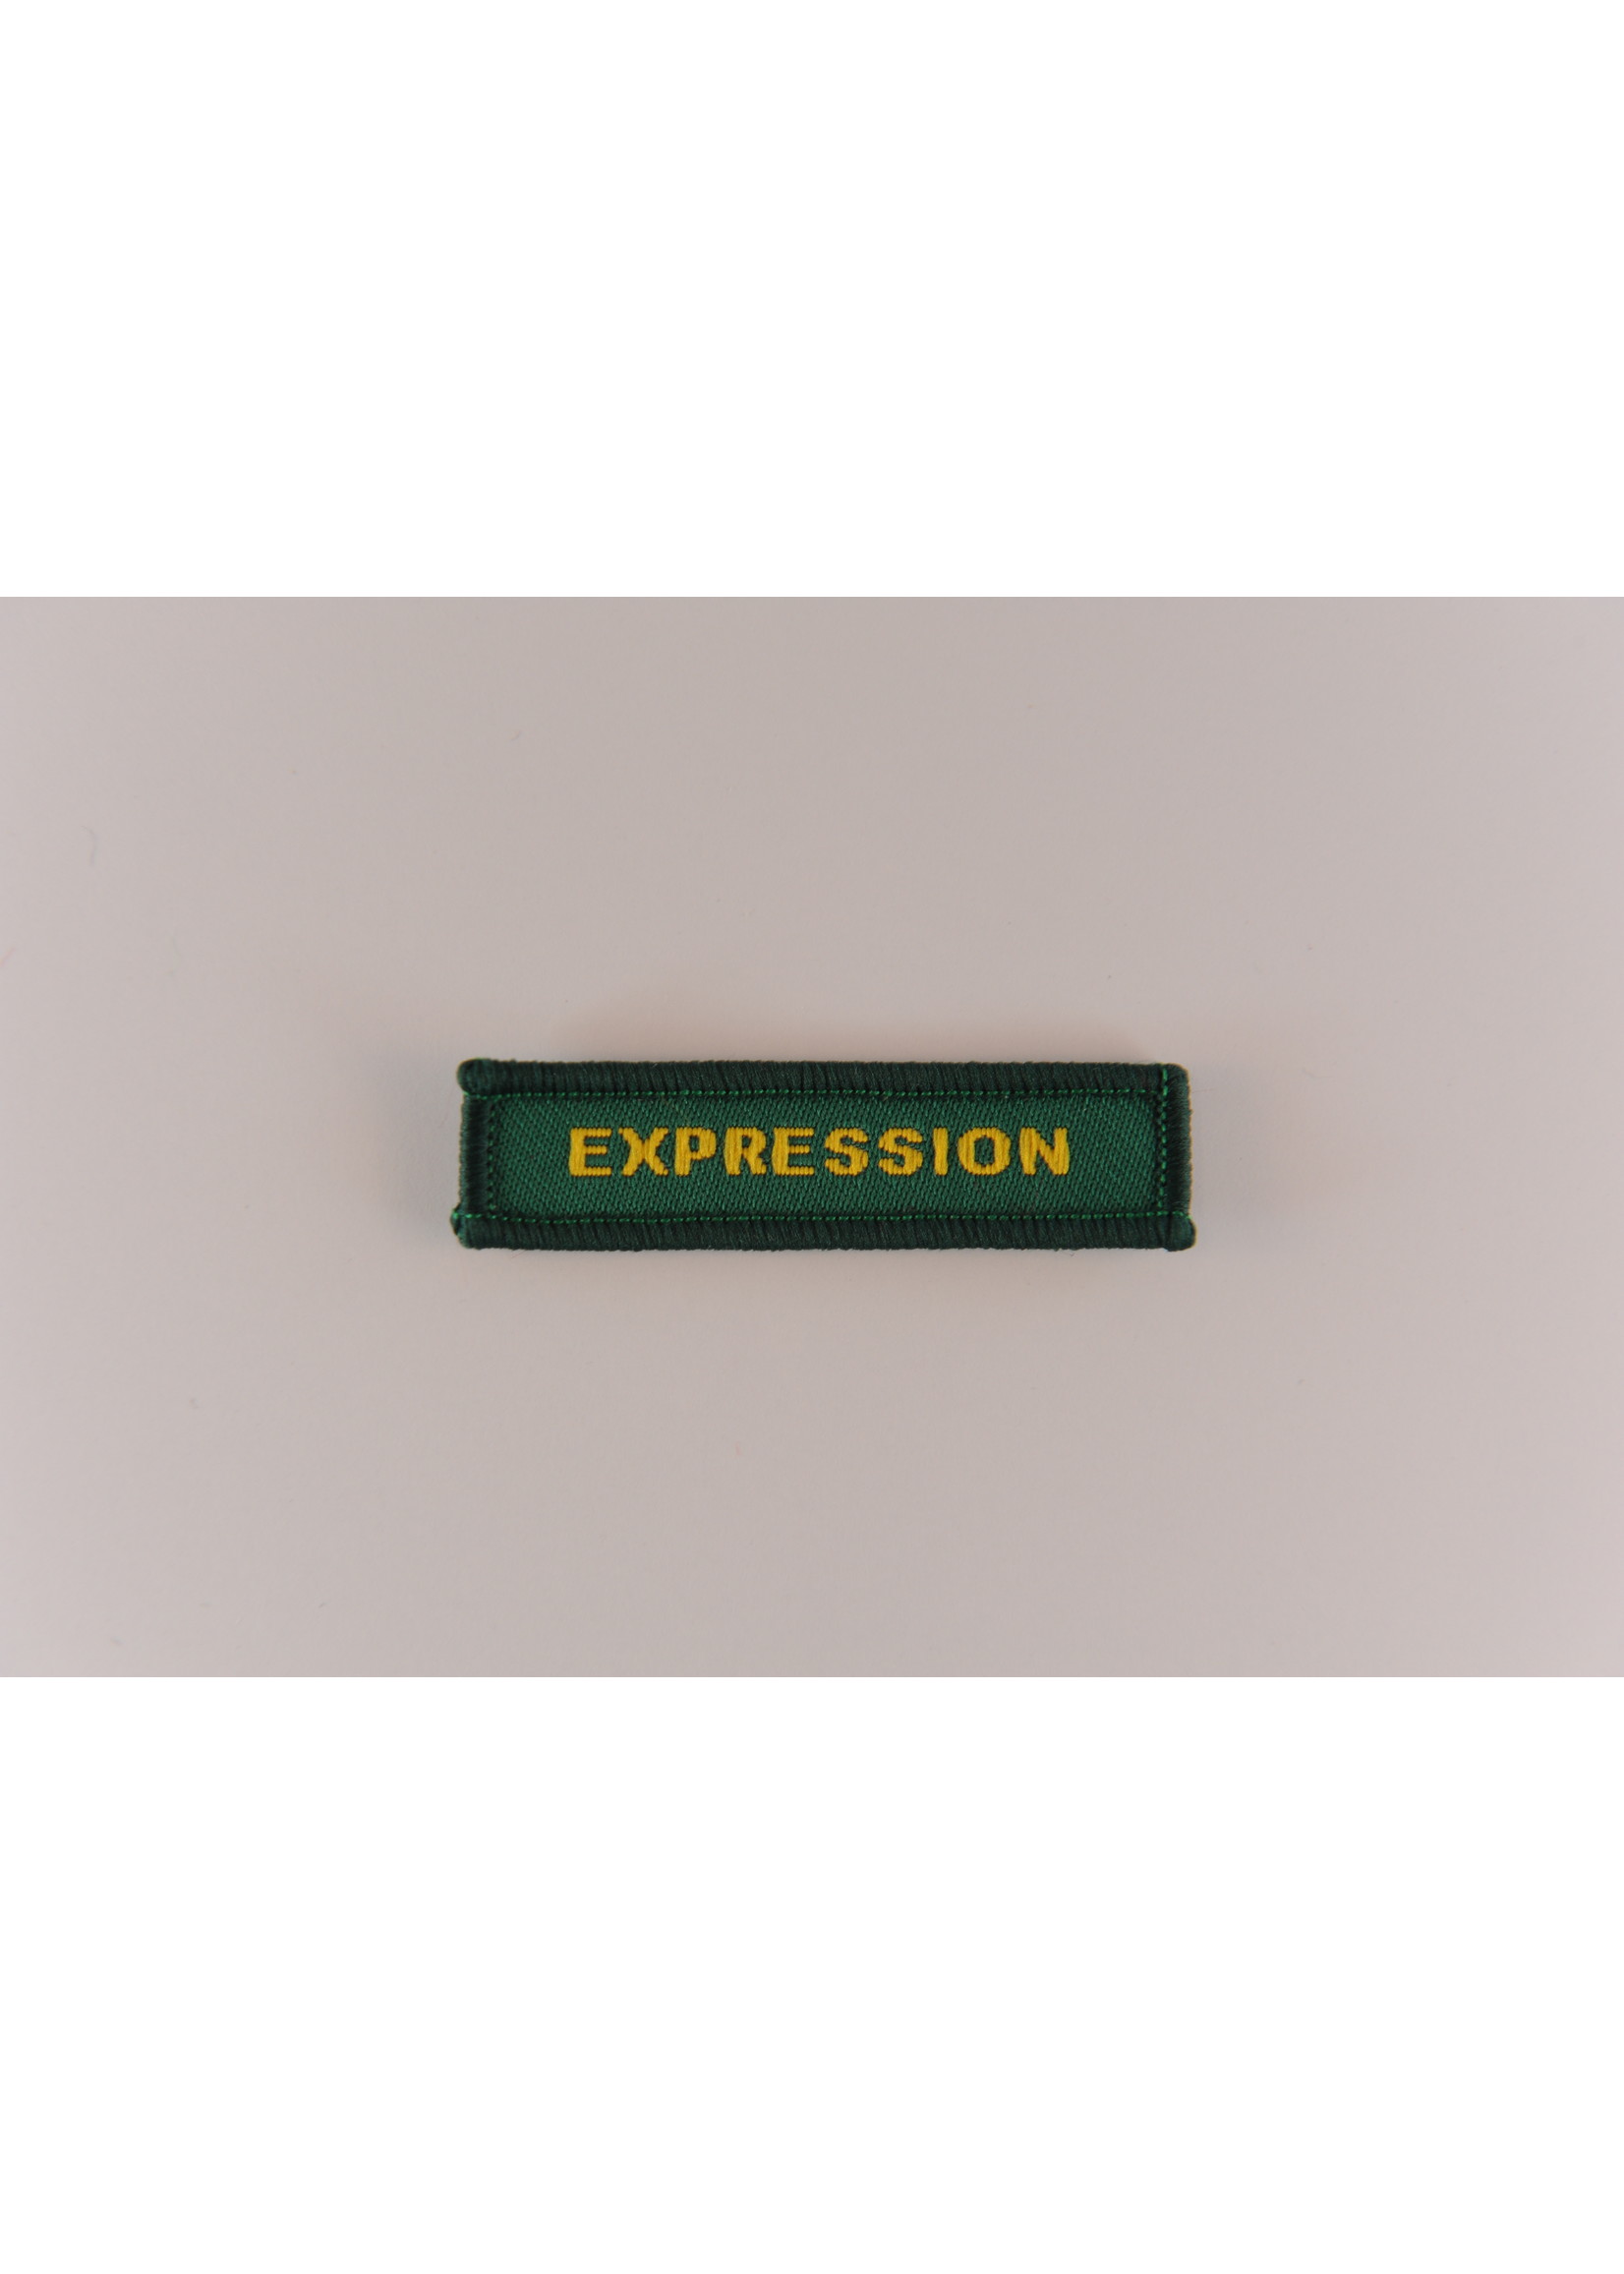 Venturer Expression Badge: Green